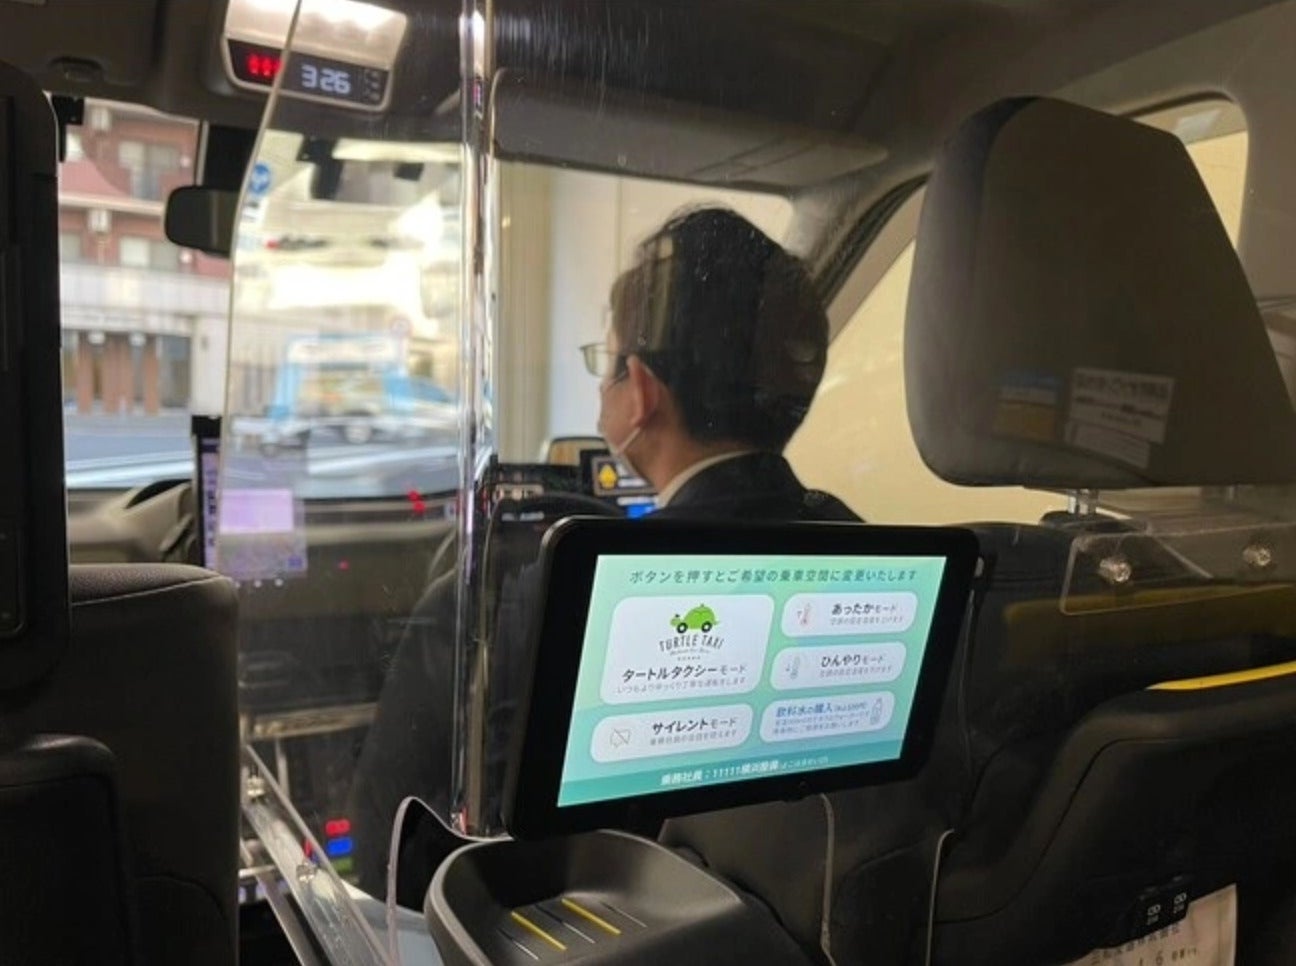 แท็กซี่ญี่ปุ่นเพิ่มโหมดเงียบ ไม่ต้องการคุยกับคนขับ